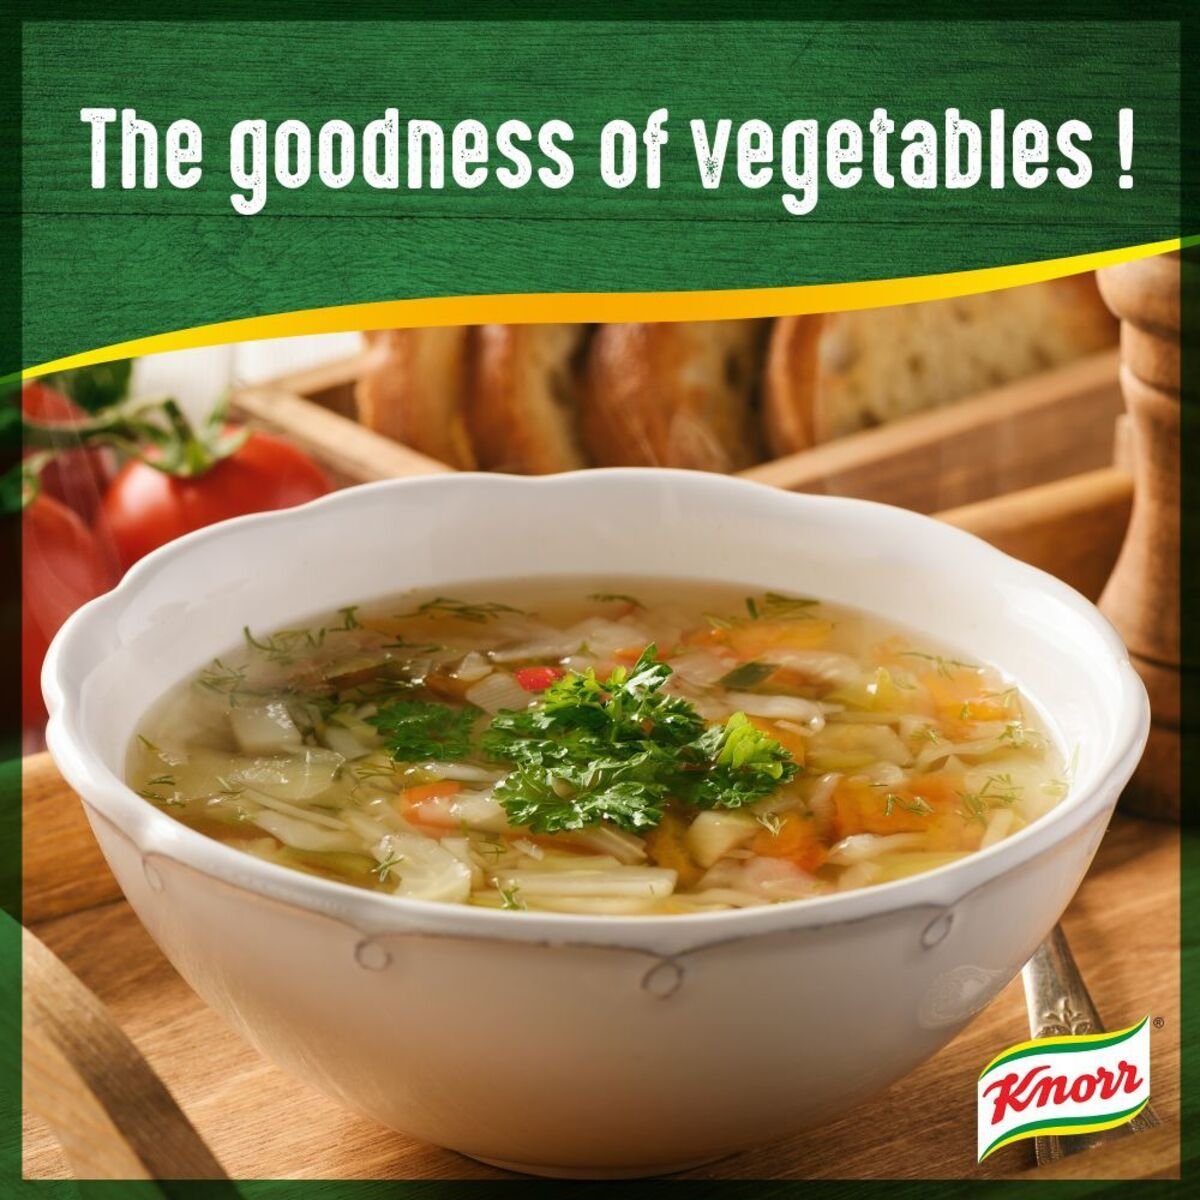 Knorr Packet Soup Vegetables 42g